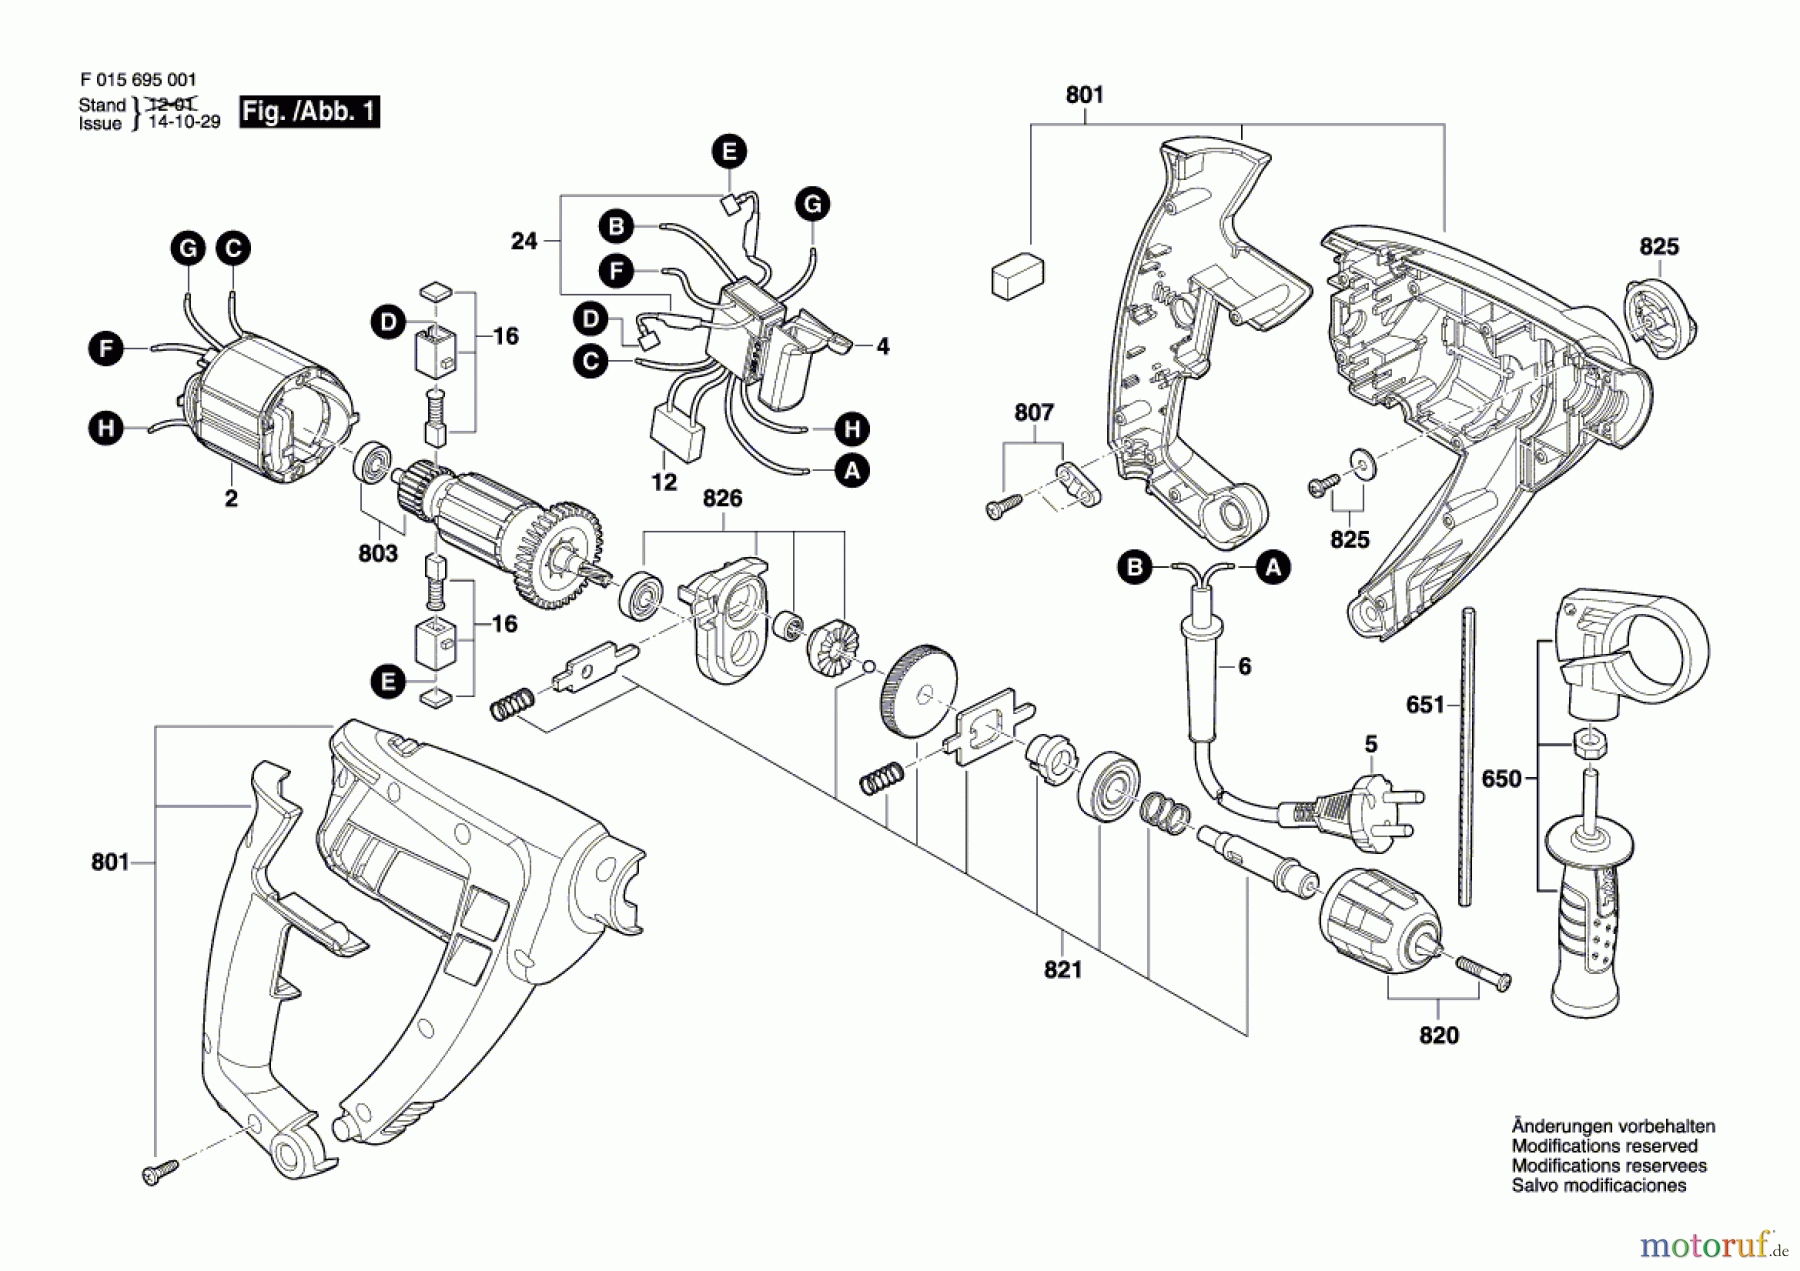  Bosch Werkzeug Schlagbohrmaschine 6950 Seite 1